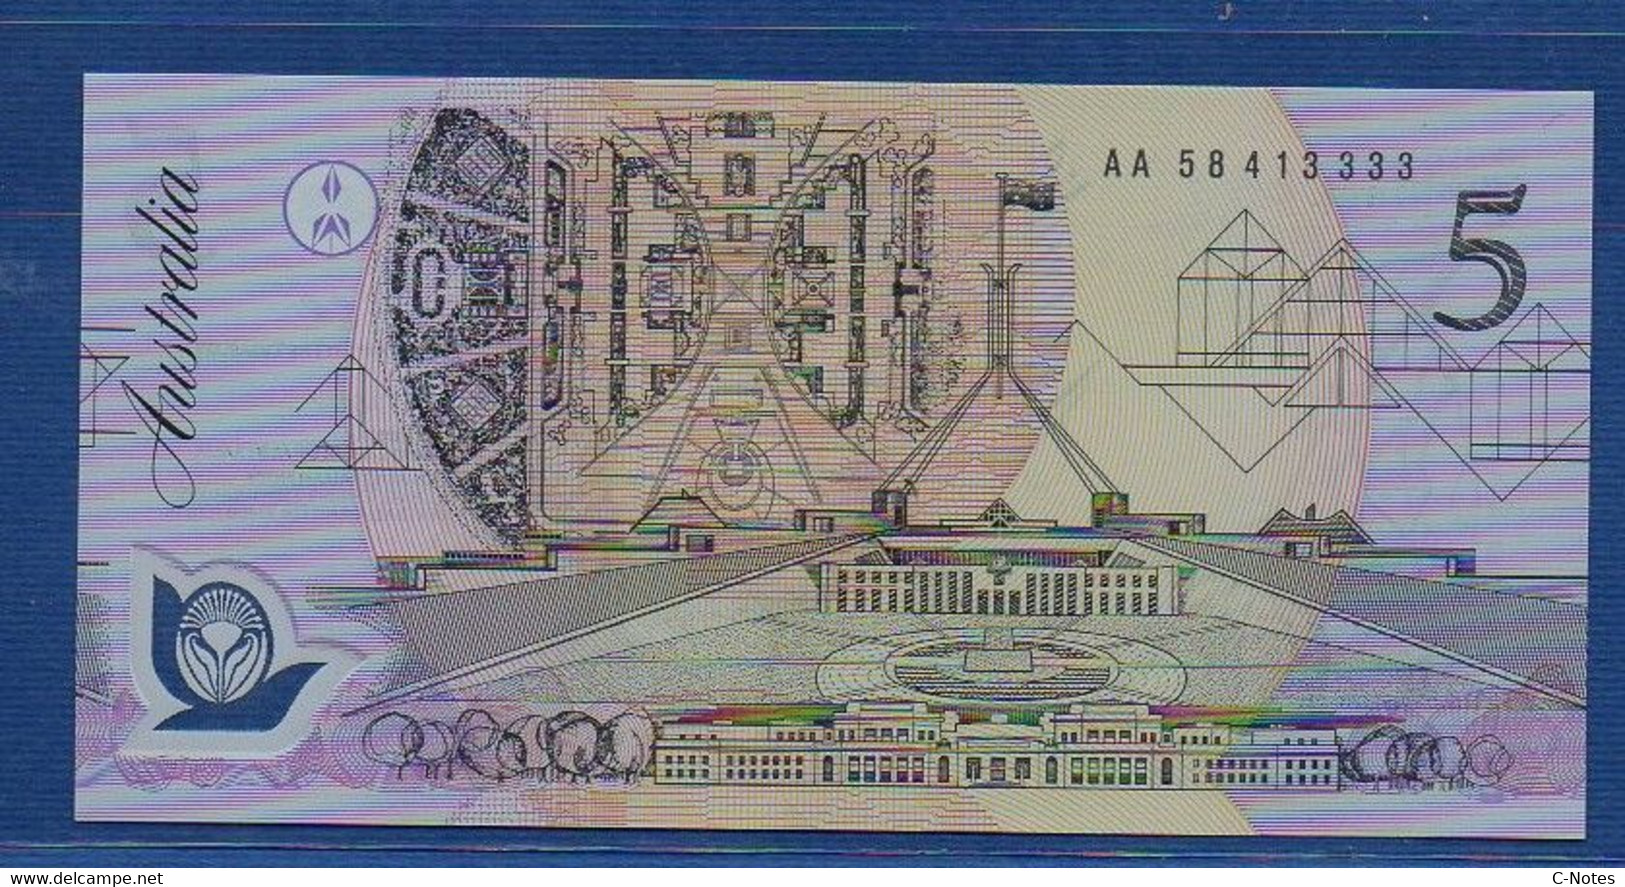 AUSTRALIA - P.50a1 - 5 Dollars 1992 UNC, Serie AA 58 413333 - 1992-2001 (polymeerbiljetten)